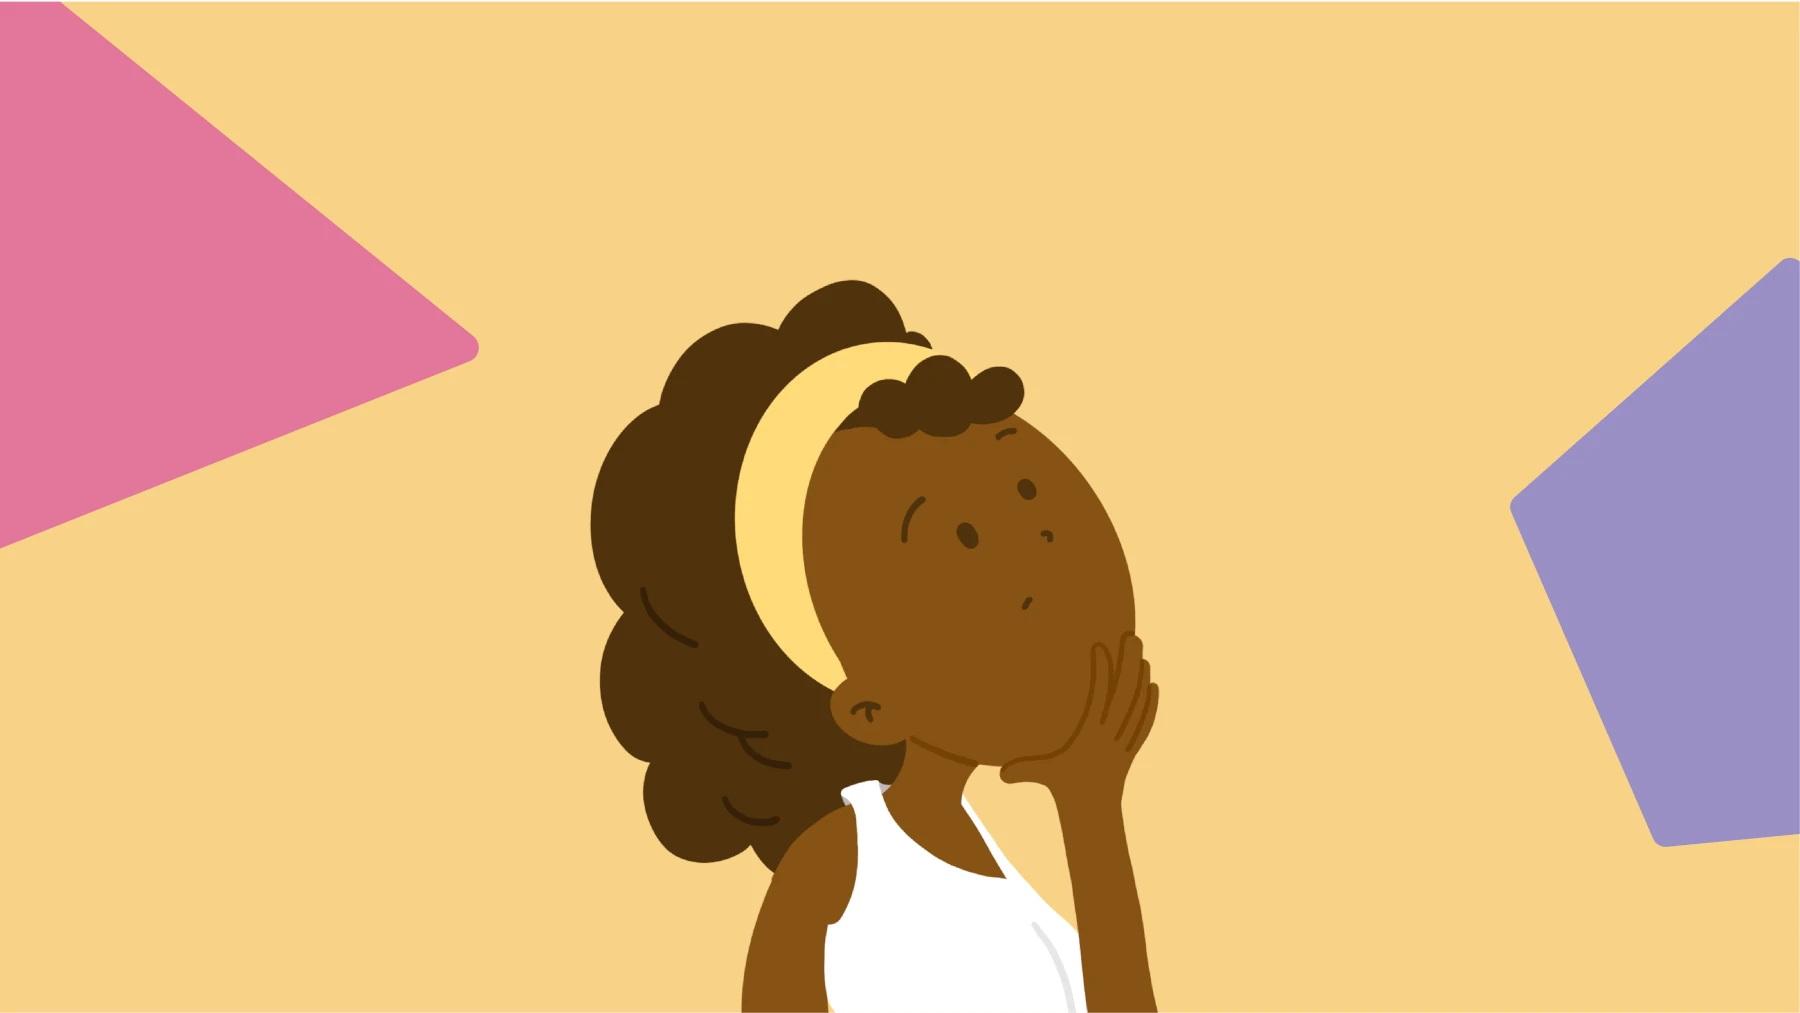 behaviorismo radical: imagem tem fundo amarelo, com desenho rosa no canto esquerdo e roxo no canto direito. Ao centro, a ilustração de uma menina negra com a mão no queixo